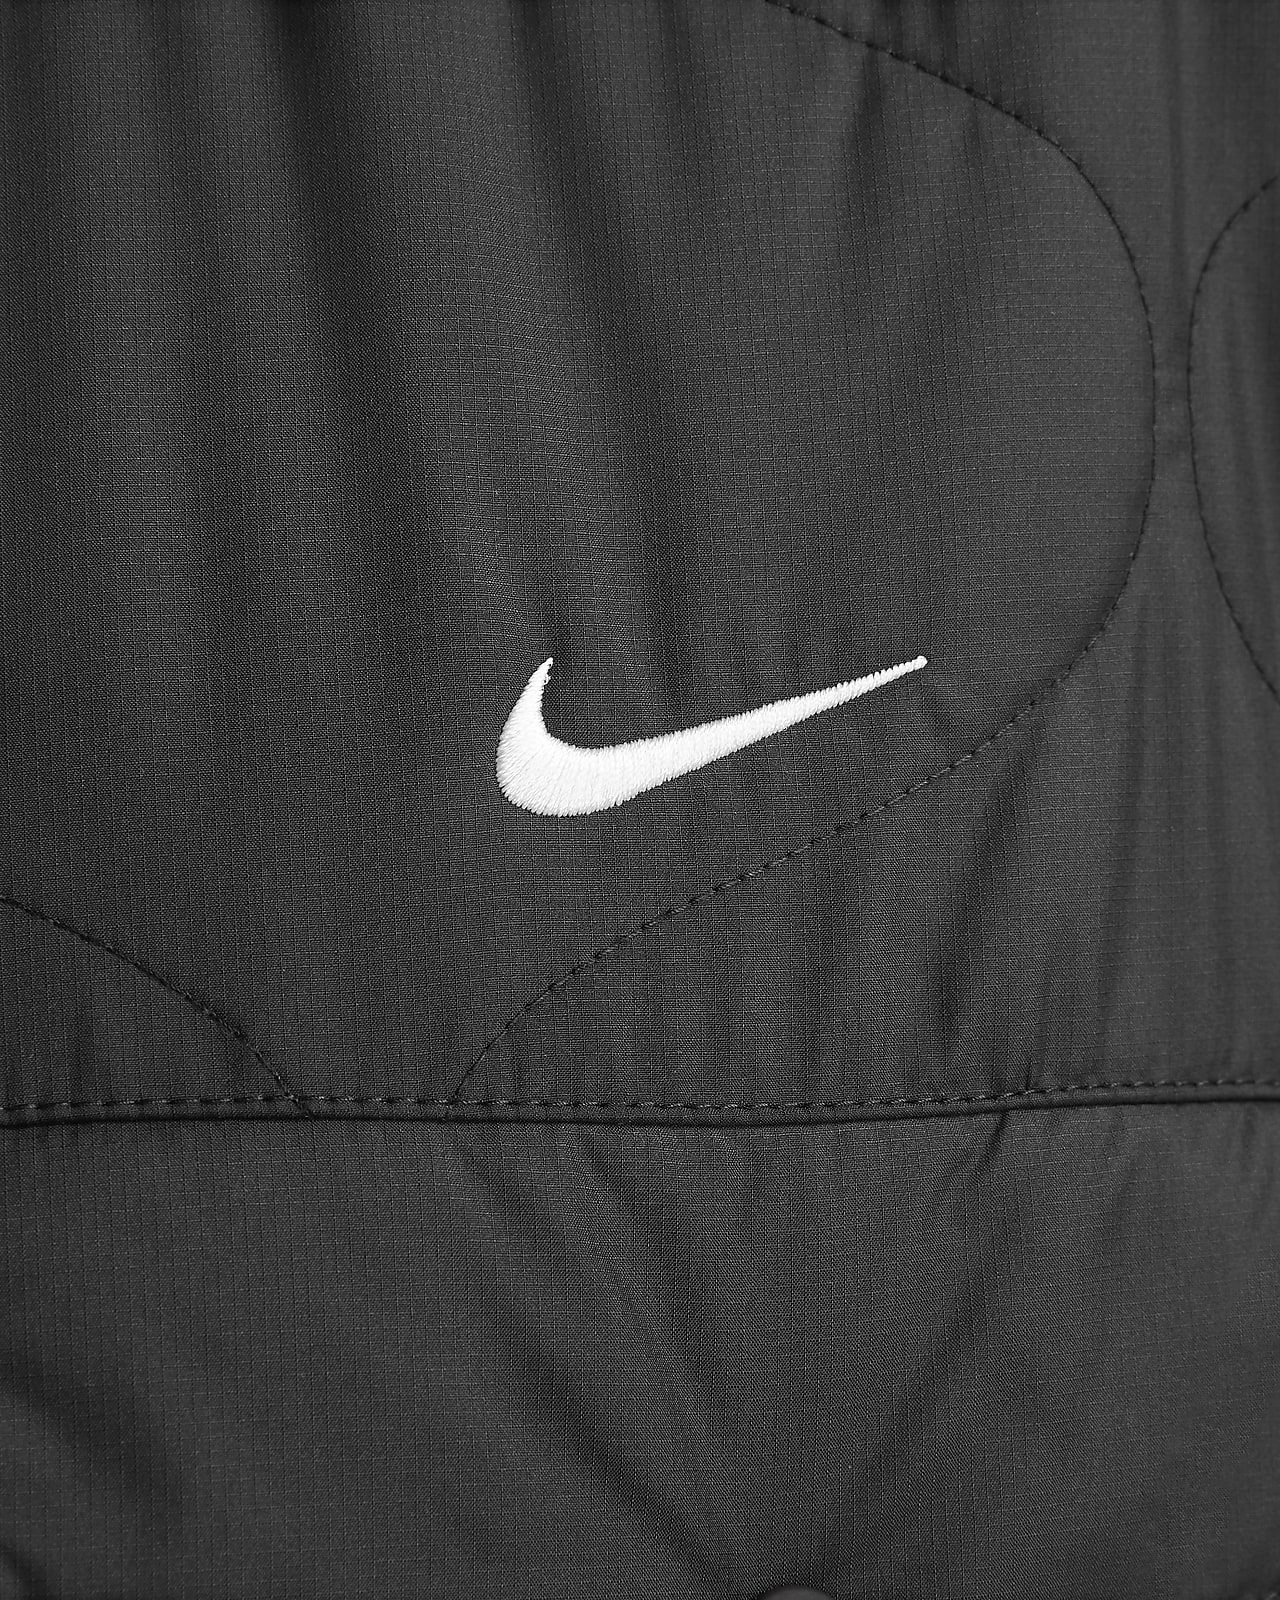 Nike Sportswear Essential Women's Vest.